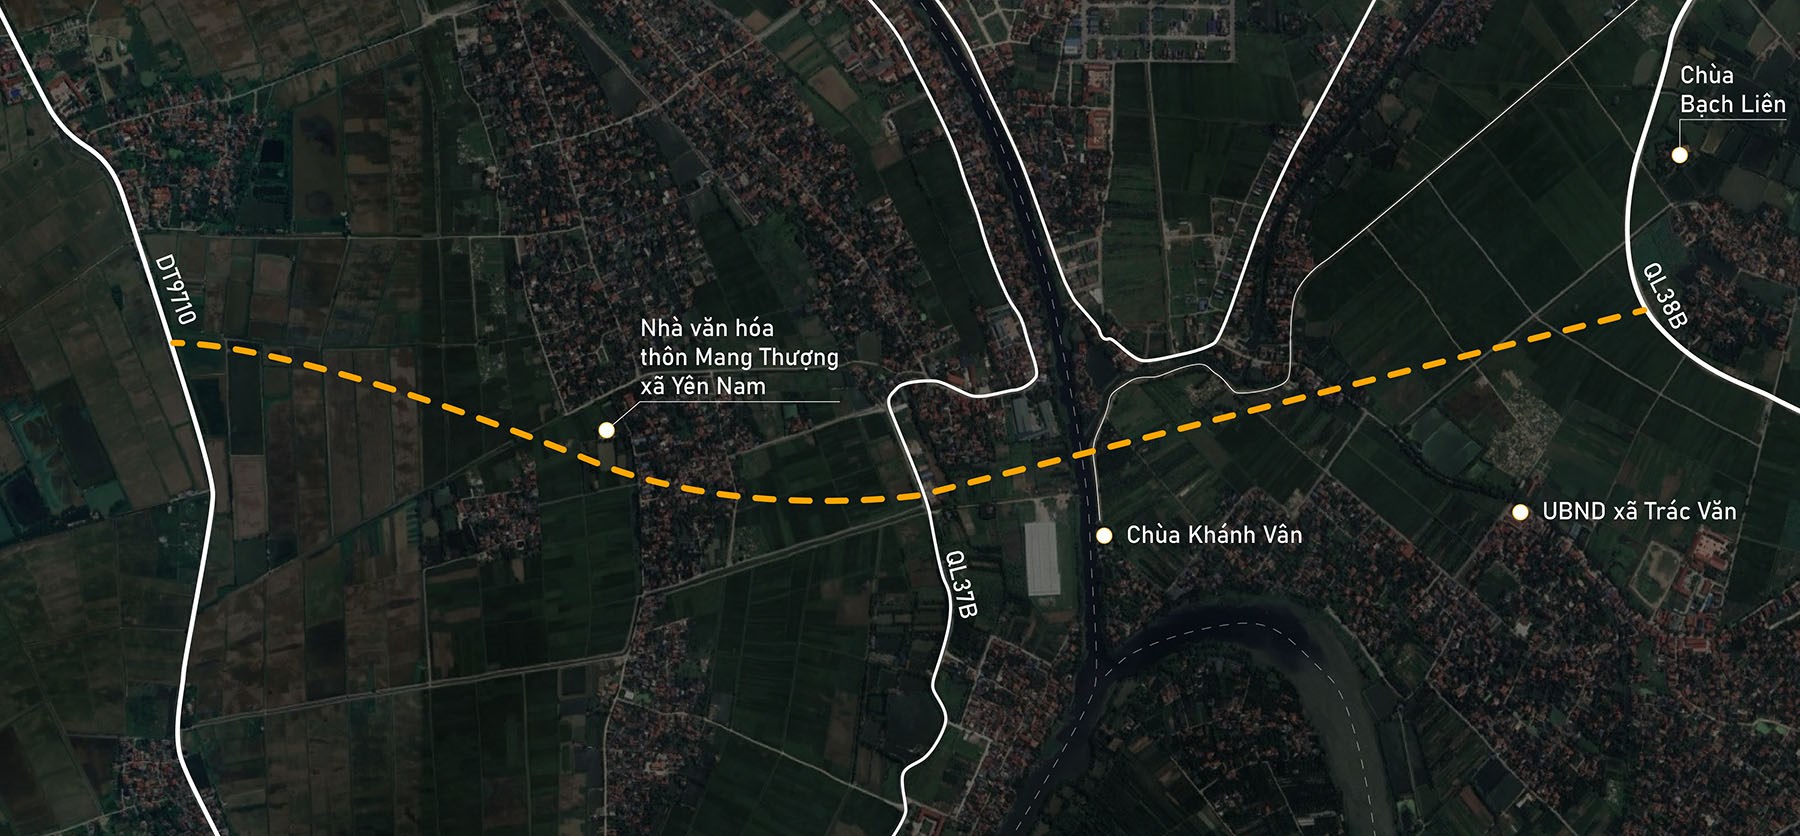 Toàn cảnh vị trí quy hoạch xây cầu vượt sông Châu Giang nối xã Yên Nam với Trác Văn, Duy Tiên, Hà Nam